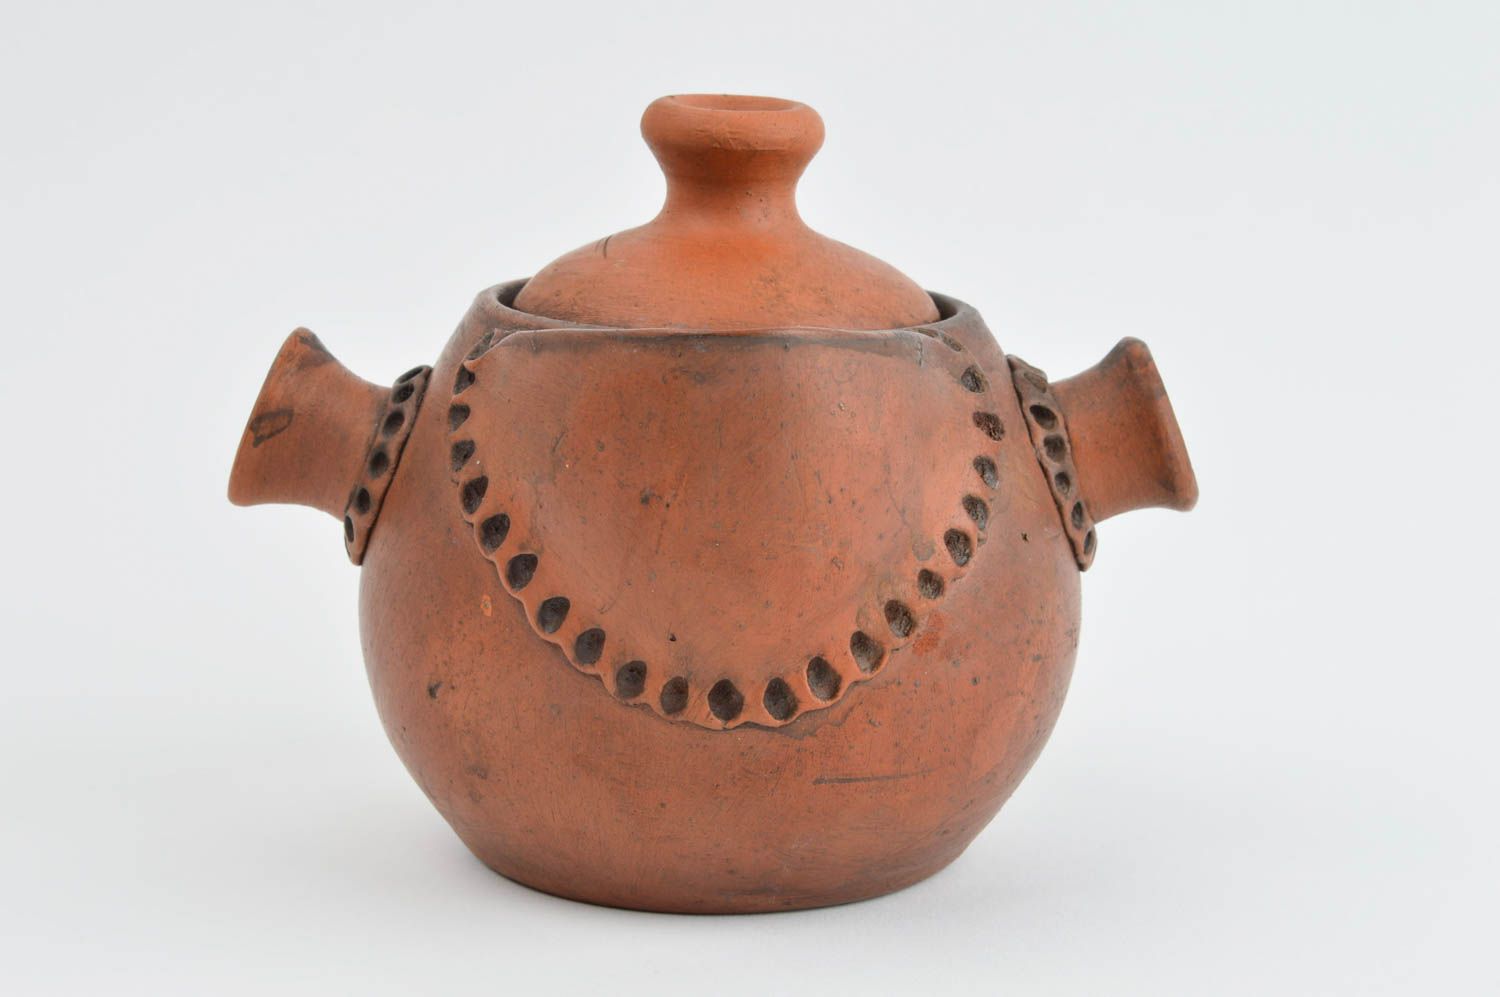 Handmade ceramic teapot pottery works modern kitchen design kitchen supplies photo 2